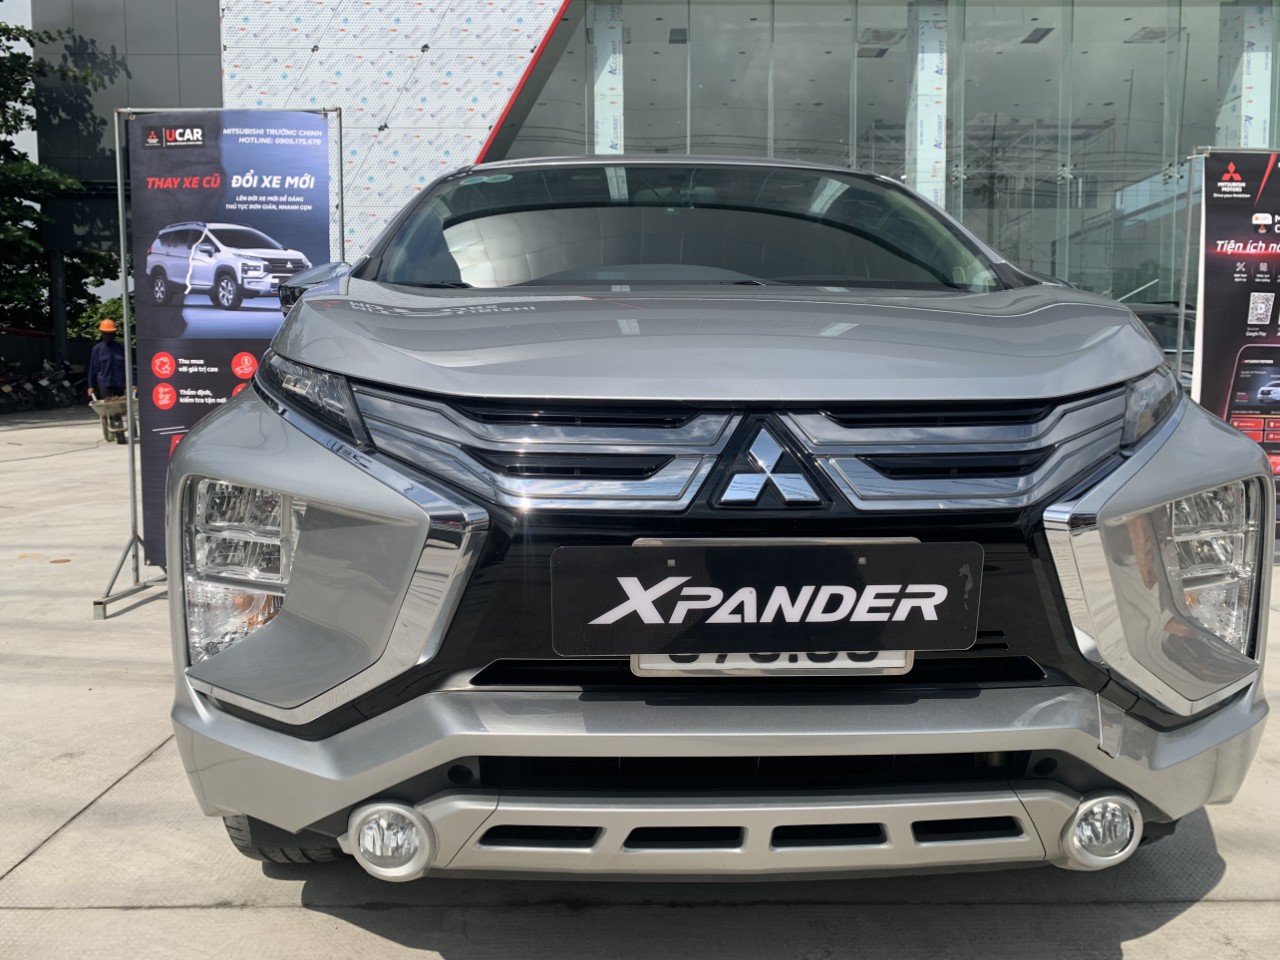 Em bán Xpander 1.5 AT 2021, xe được bảo hành sau khi mua tại đại lý.